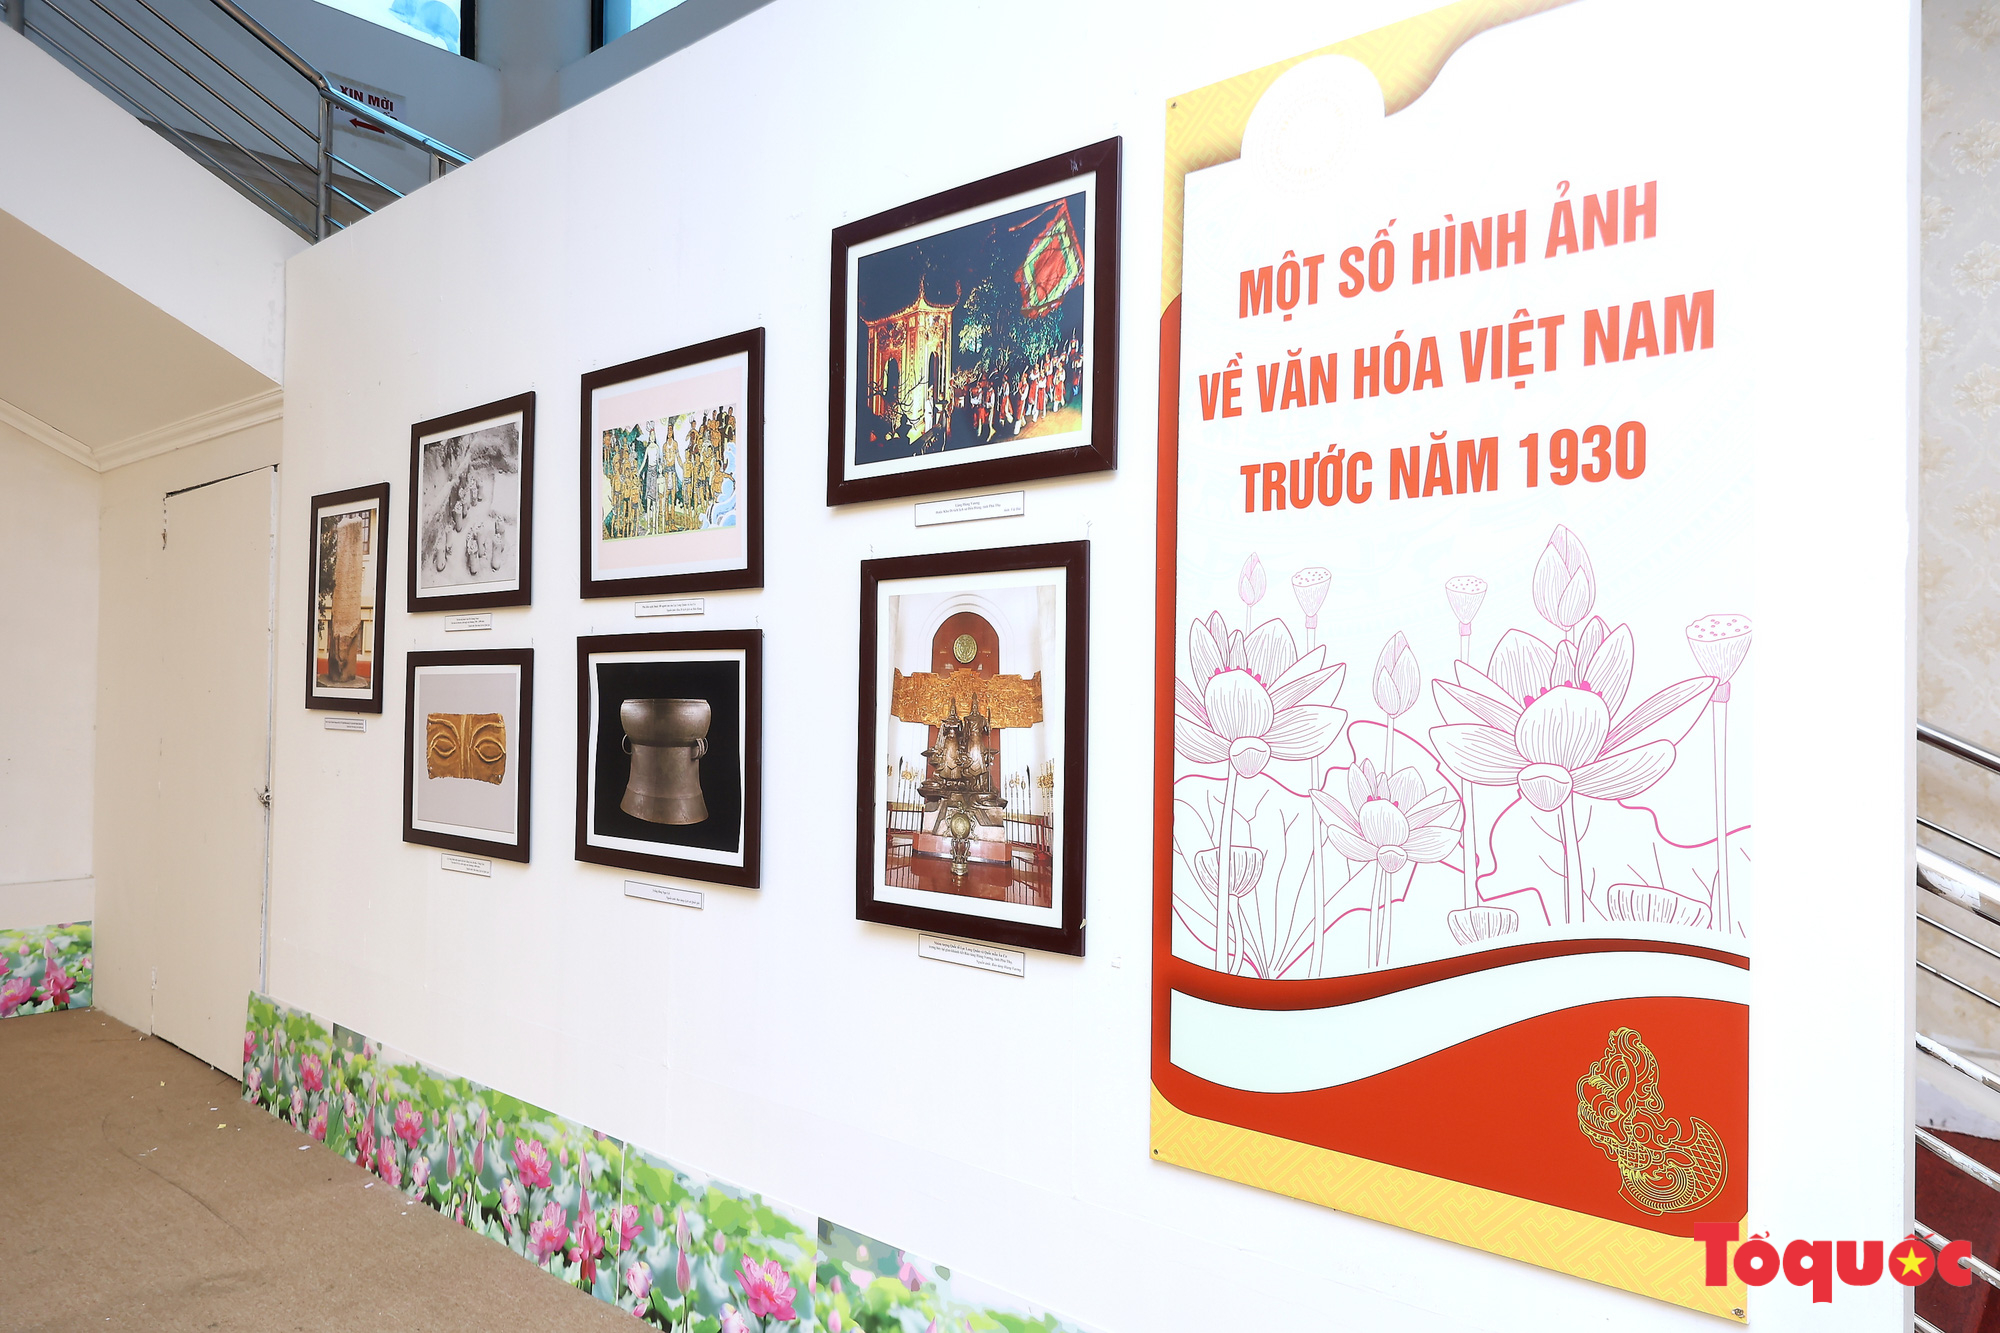 Triển lãm "Văn hóa soi đường cho quốc dân đi": Trưng bày gần 500 hình ảnh, hiện vật quý về văn hóa Việt Nam - Ảnh 5.